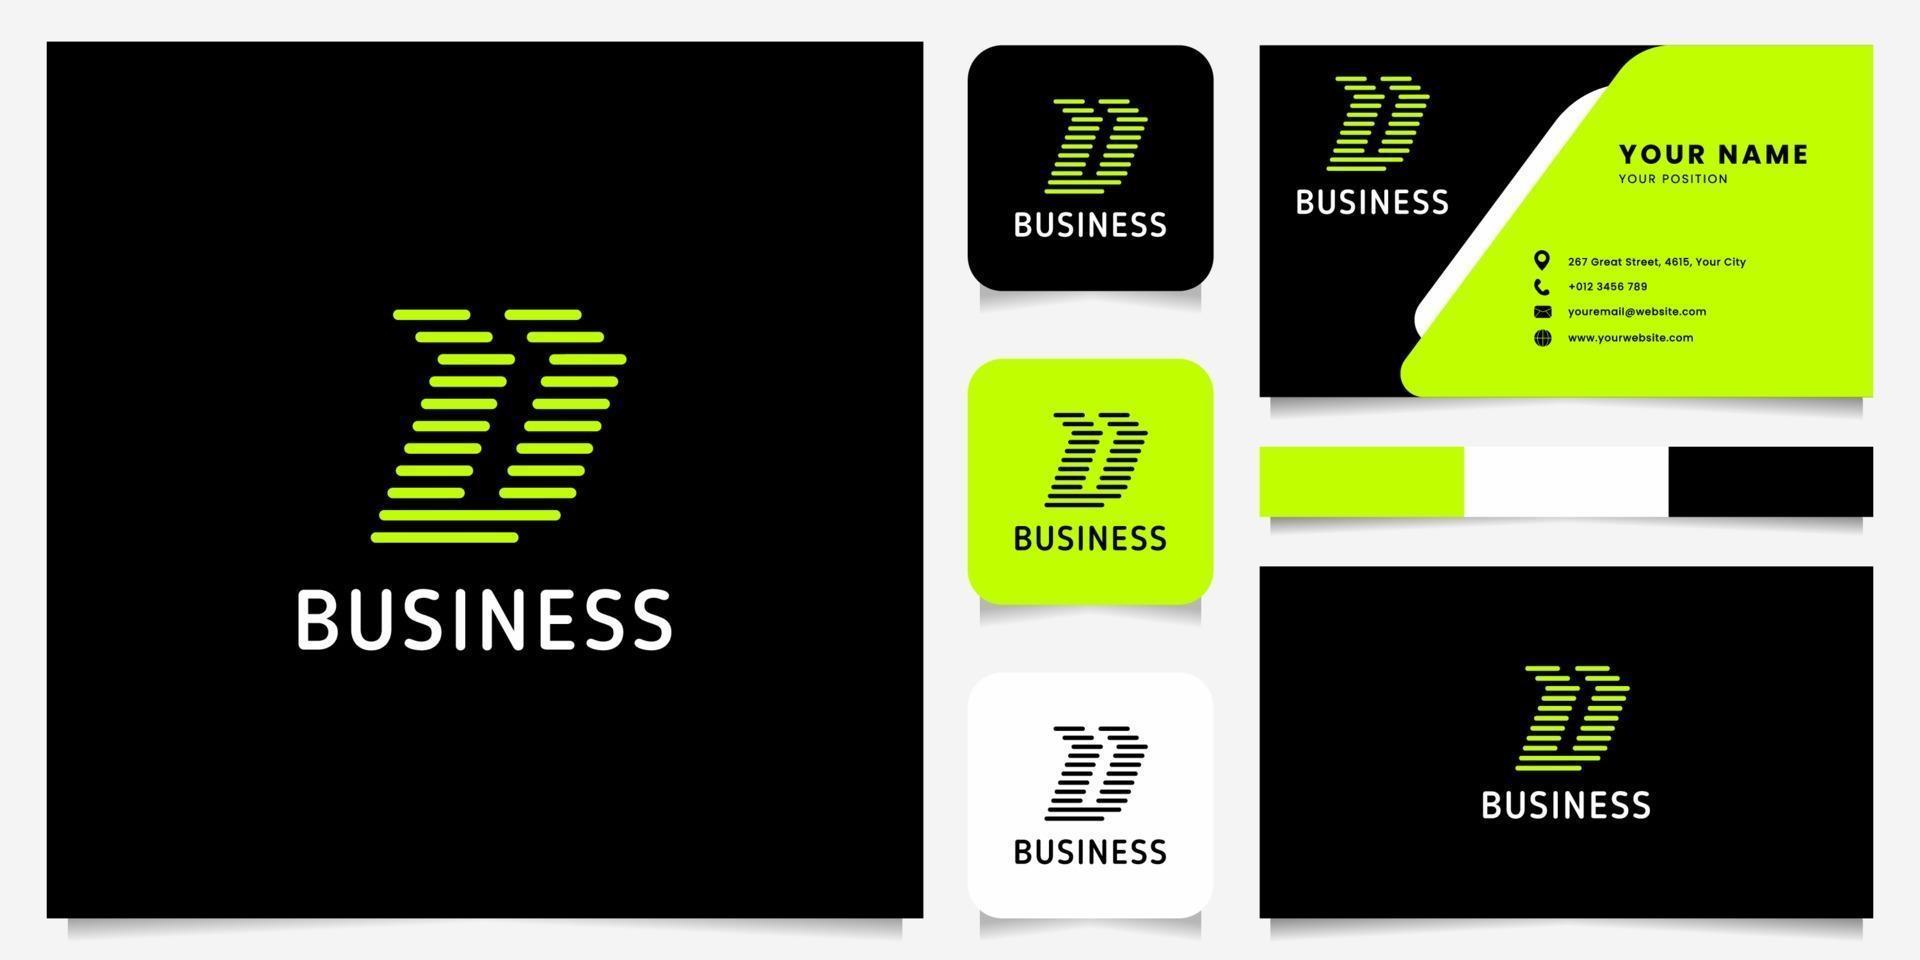 heldergroene pijl afgeronde lijnen letter u-logo op zwarte achtergrond met sjabloon voor visitekaartjes vector